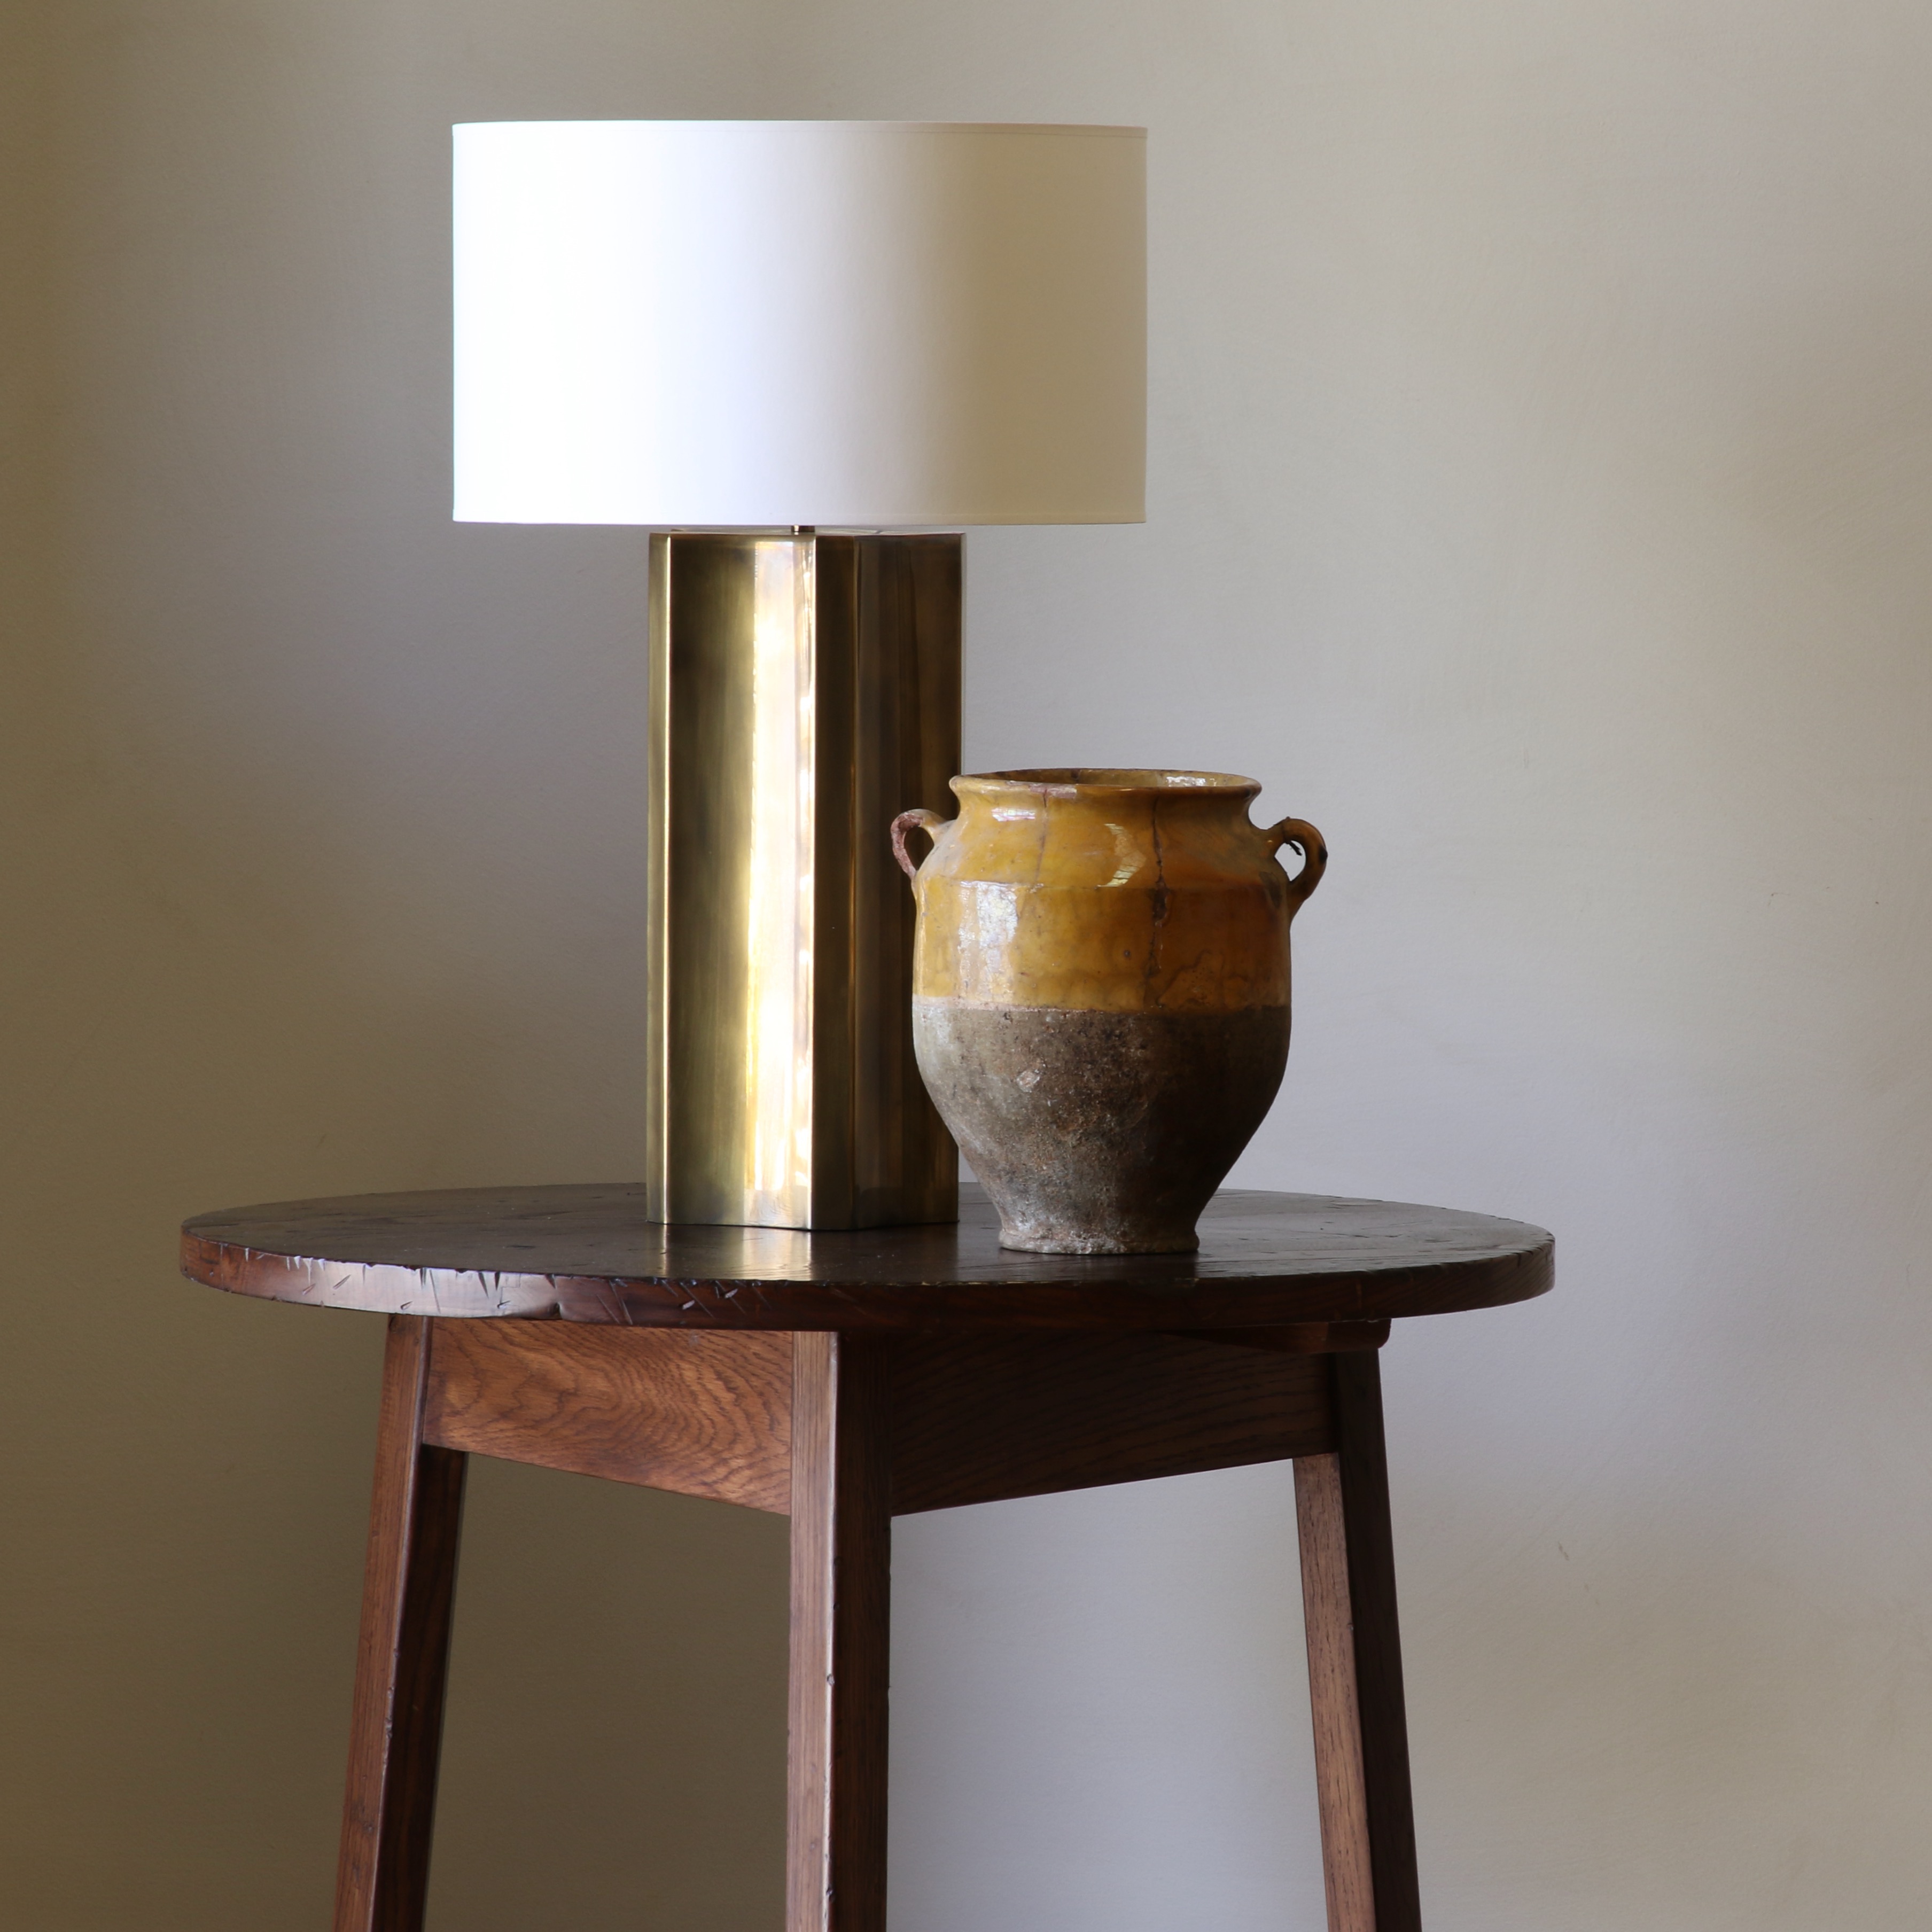 137-56 - Baratta Lamp in Antique Brass / Collier Webb